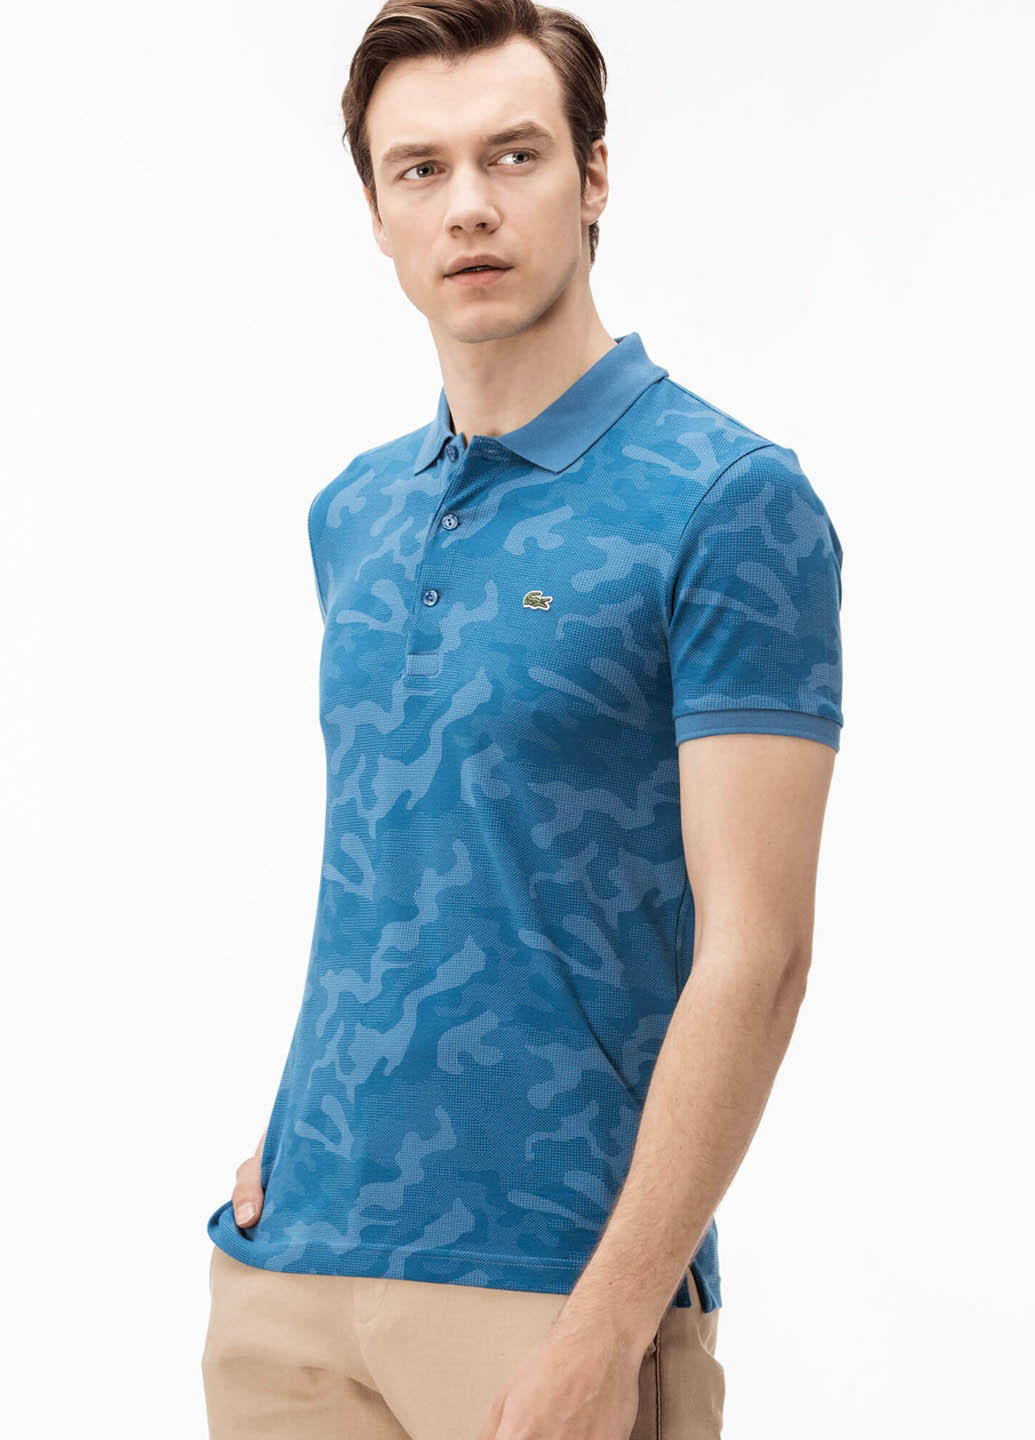 Темно-голубой футболка-поло для мужчин Lacoste с камуфляжным принтом